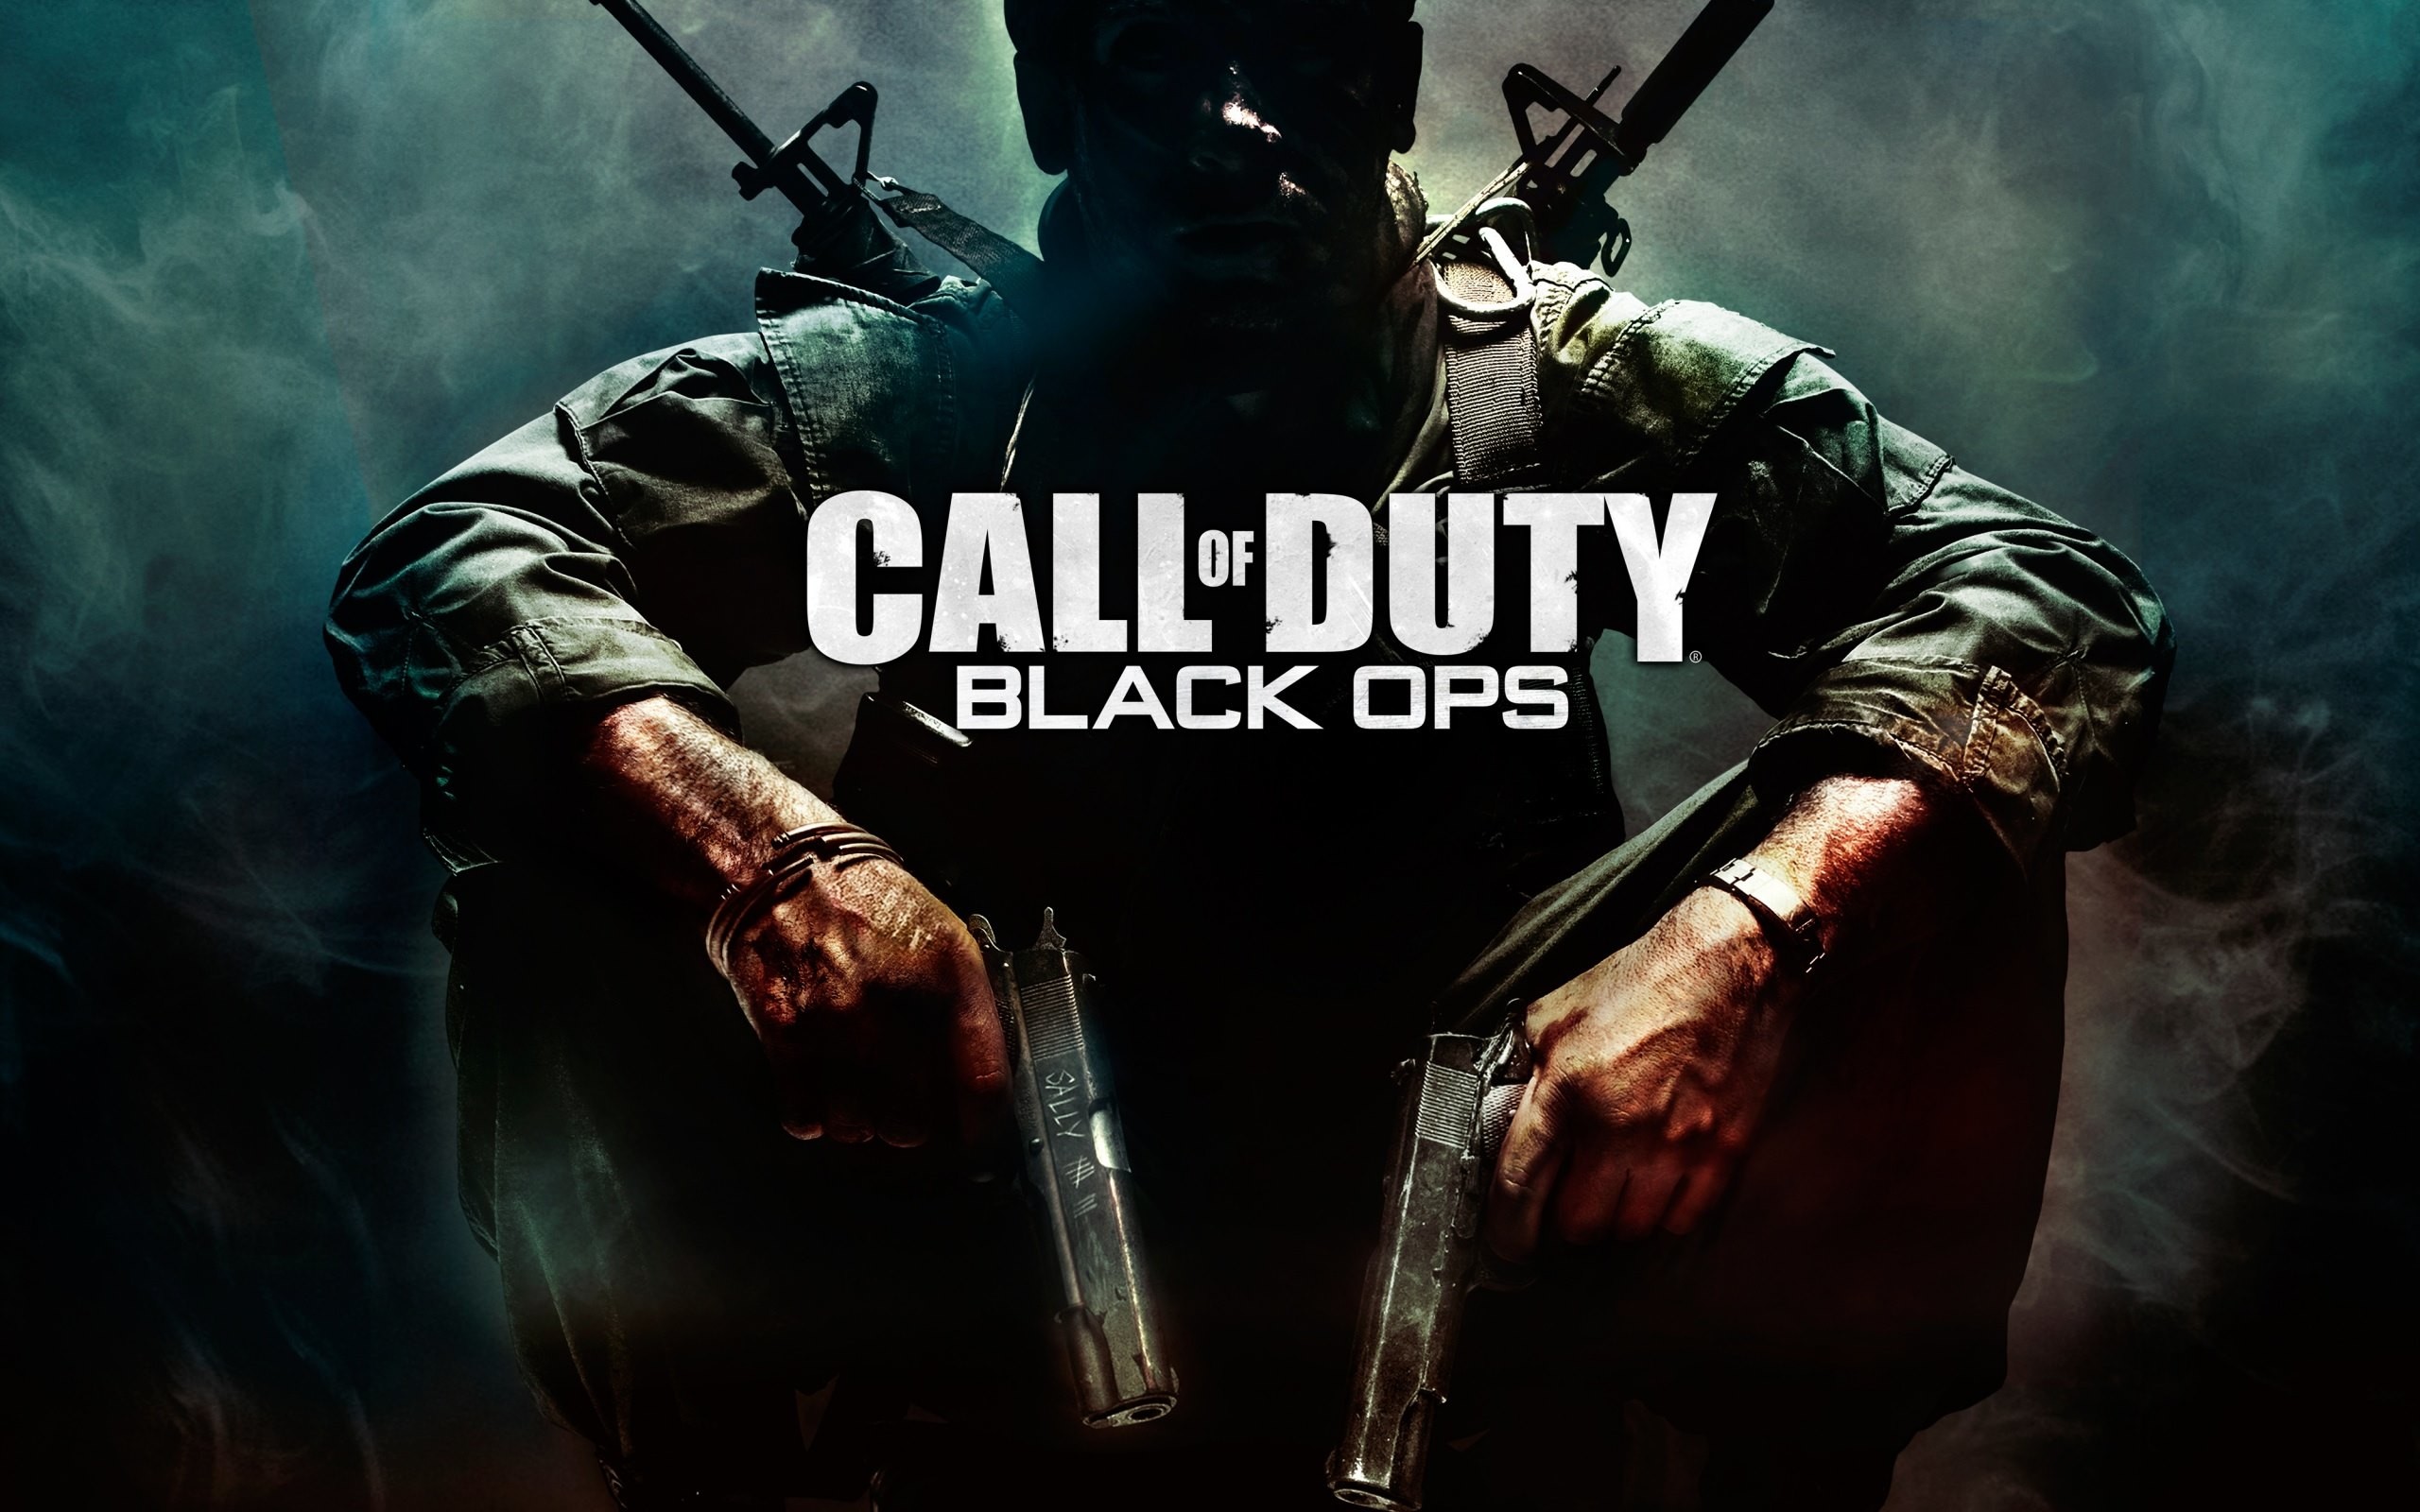 Hãy thưởng thức nền tảng đẹp mắt của Call of Duty ngay hôm nay! Được thiết kế để mang lại trải nghiệm chơi game chân thực nhất, hình nền Call of Duty sẽ cho bạn trải nghiệm các cảnh quay đậm chất hành động từ trò chơi phổ biến nhất hiện nay. Tưởng tượng màu sắc tuyệt đẹp, âm thanh đầy ấn tượng và cảm giác chân thực nhất khi xem các hình nền Call of Duty của chúng tôi.